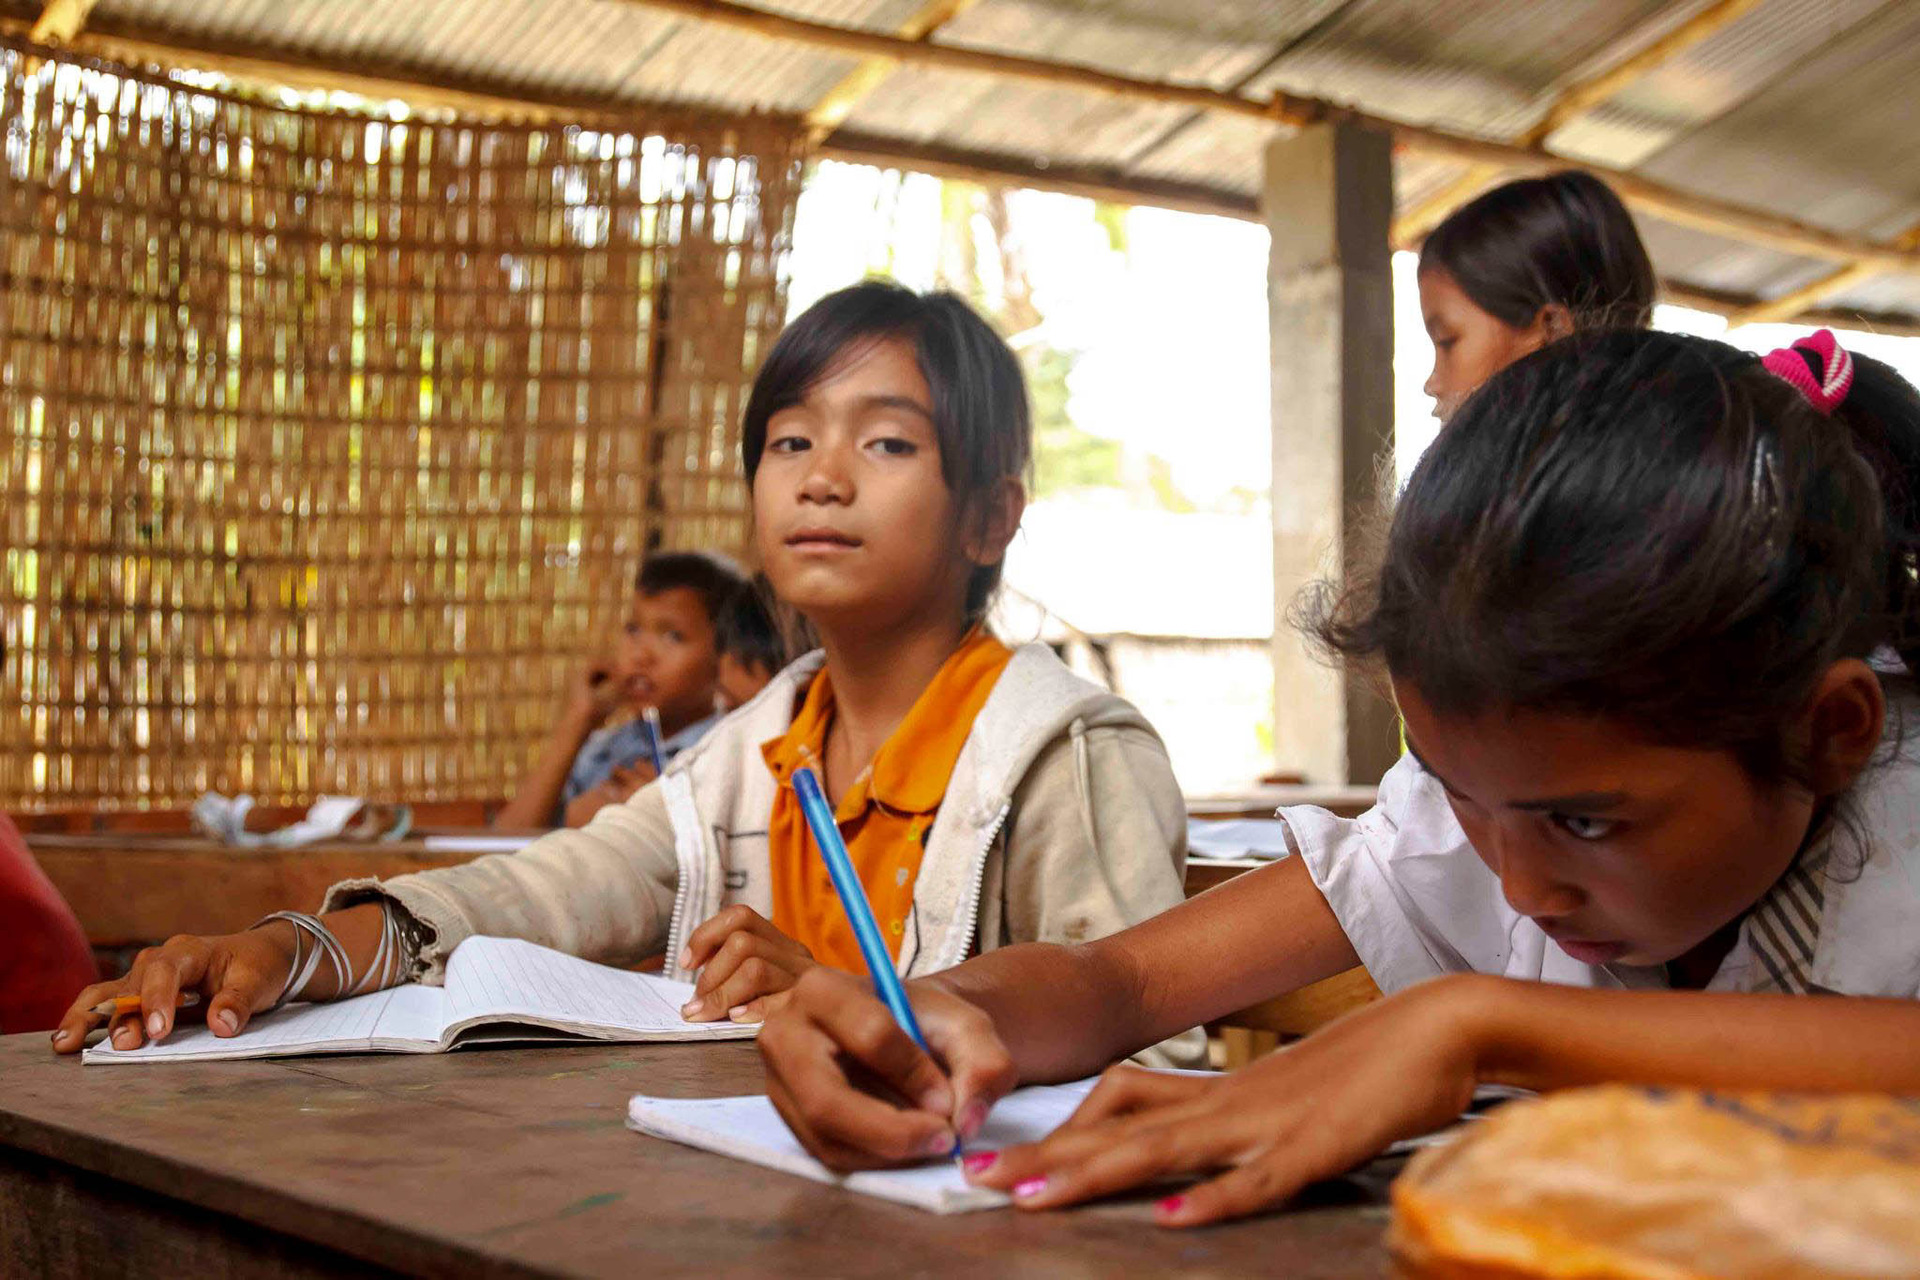 Žáci ve škole jsou nuceni učit se věci hlavně zpaměti, Vietnam